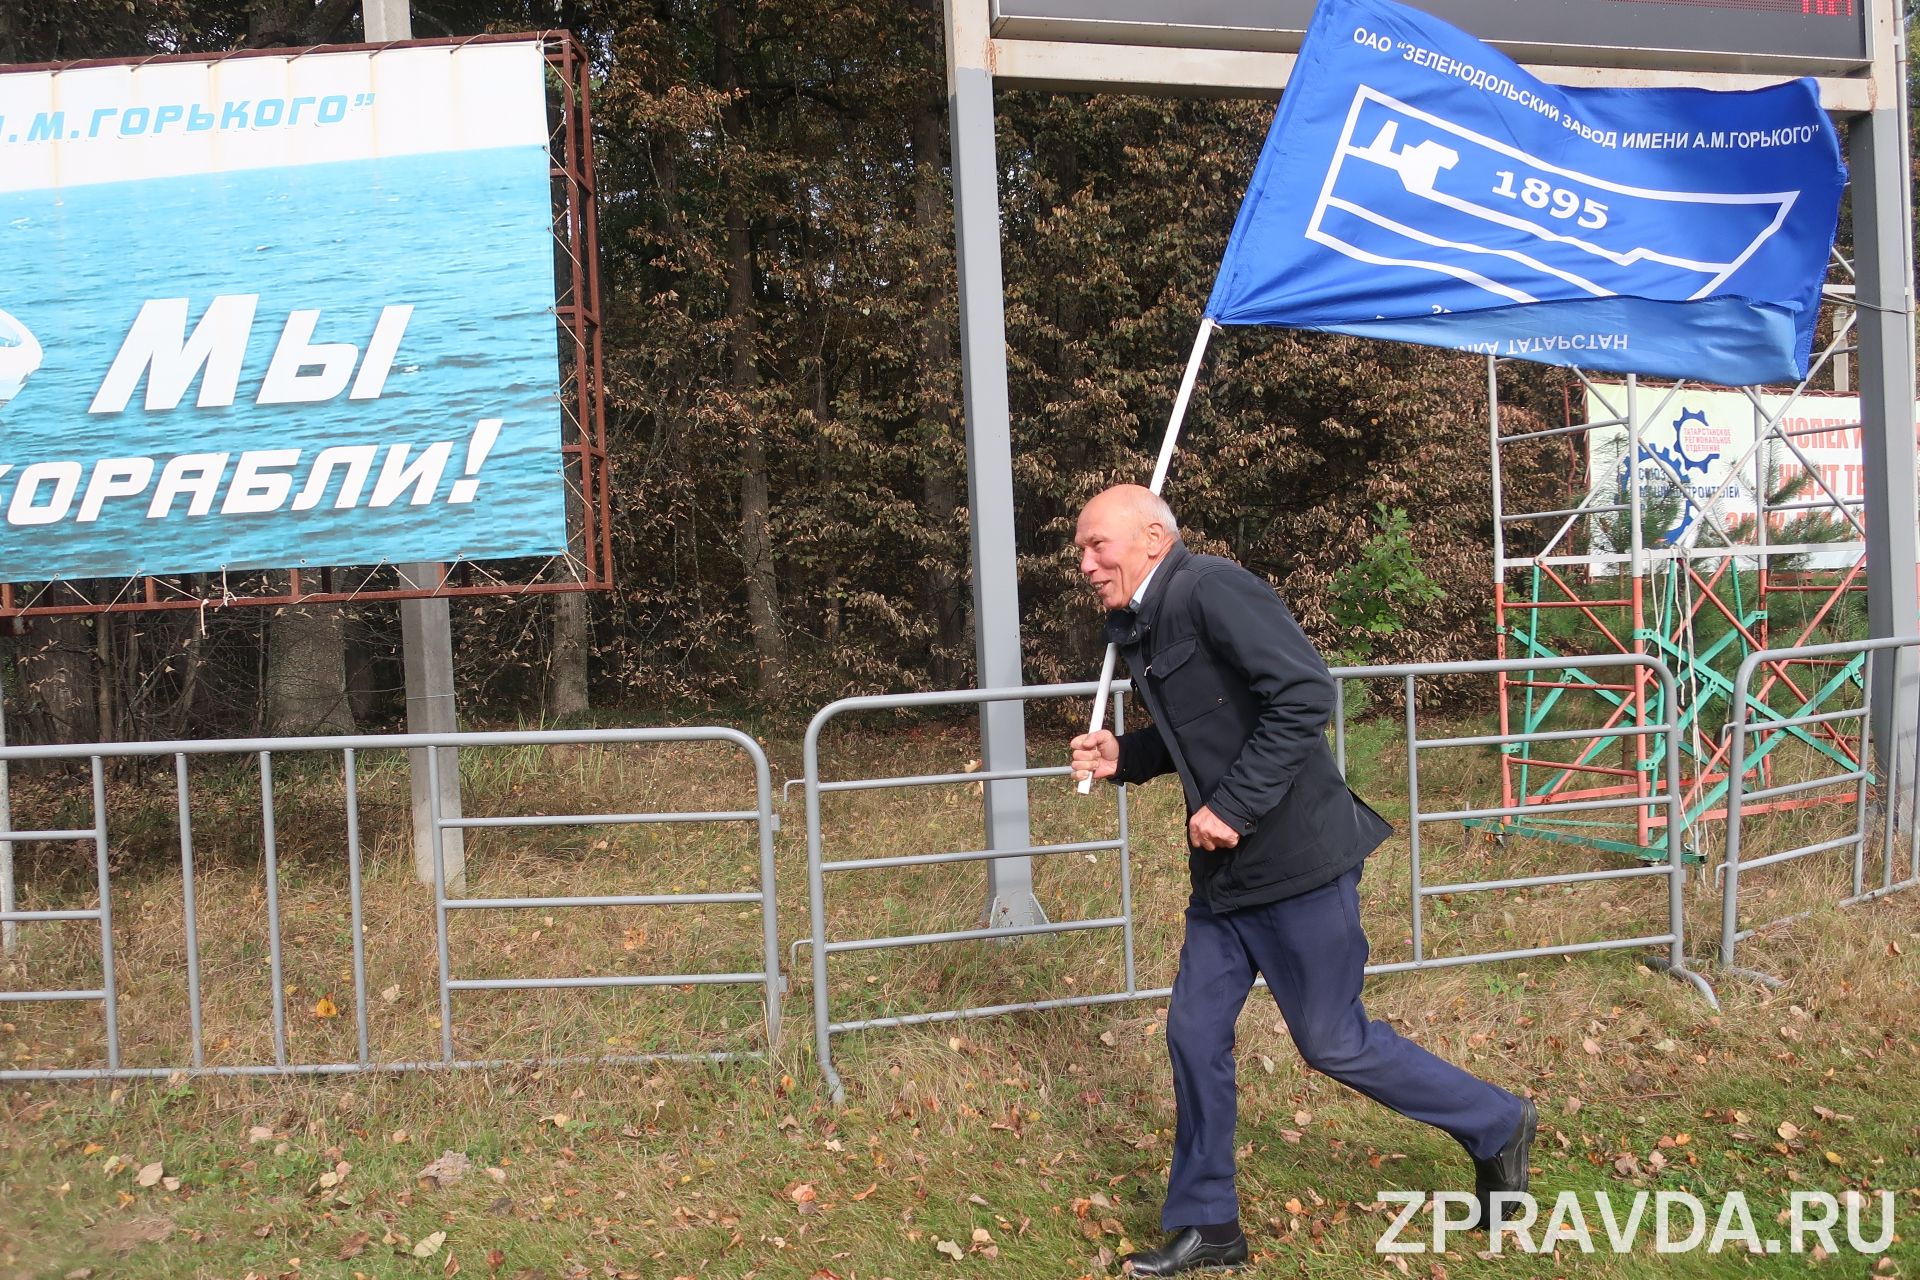 Видео: В день выборов в Зеленодольске прошёл масс-старт в рамках Кросса-нации-2021